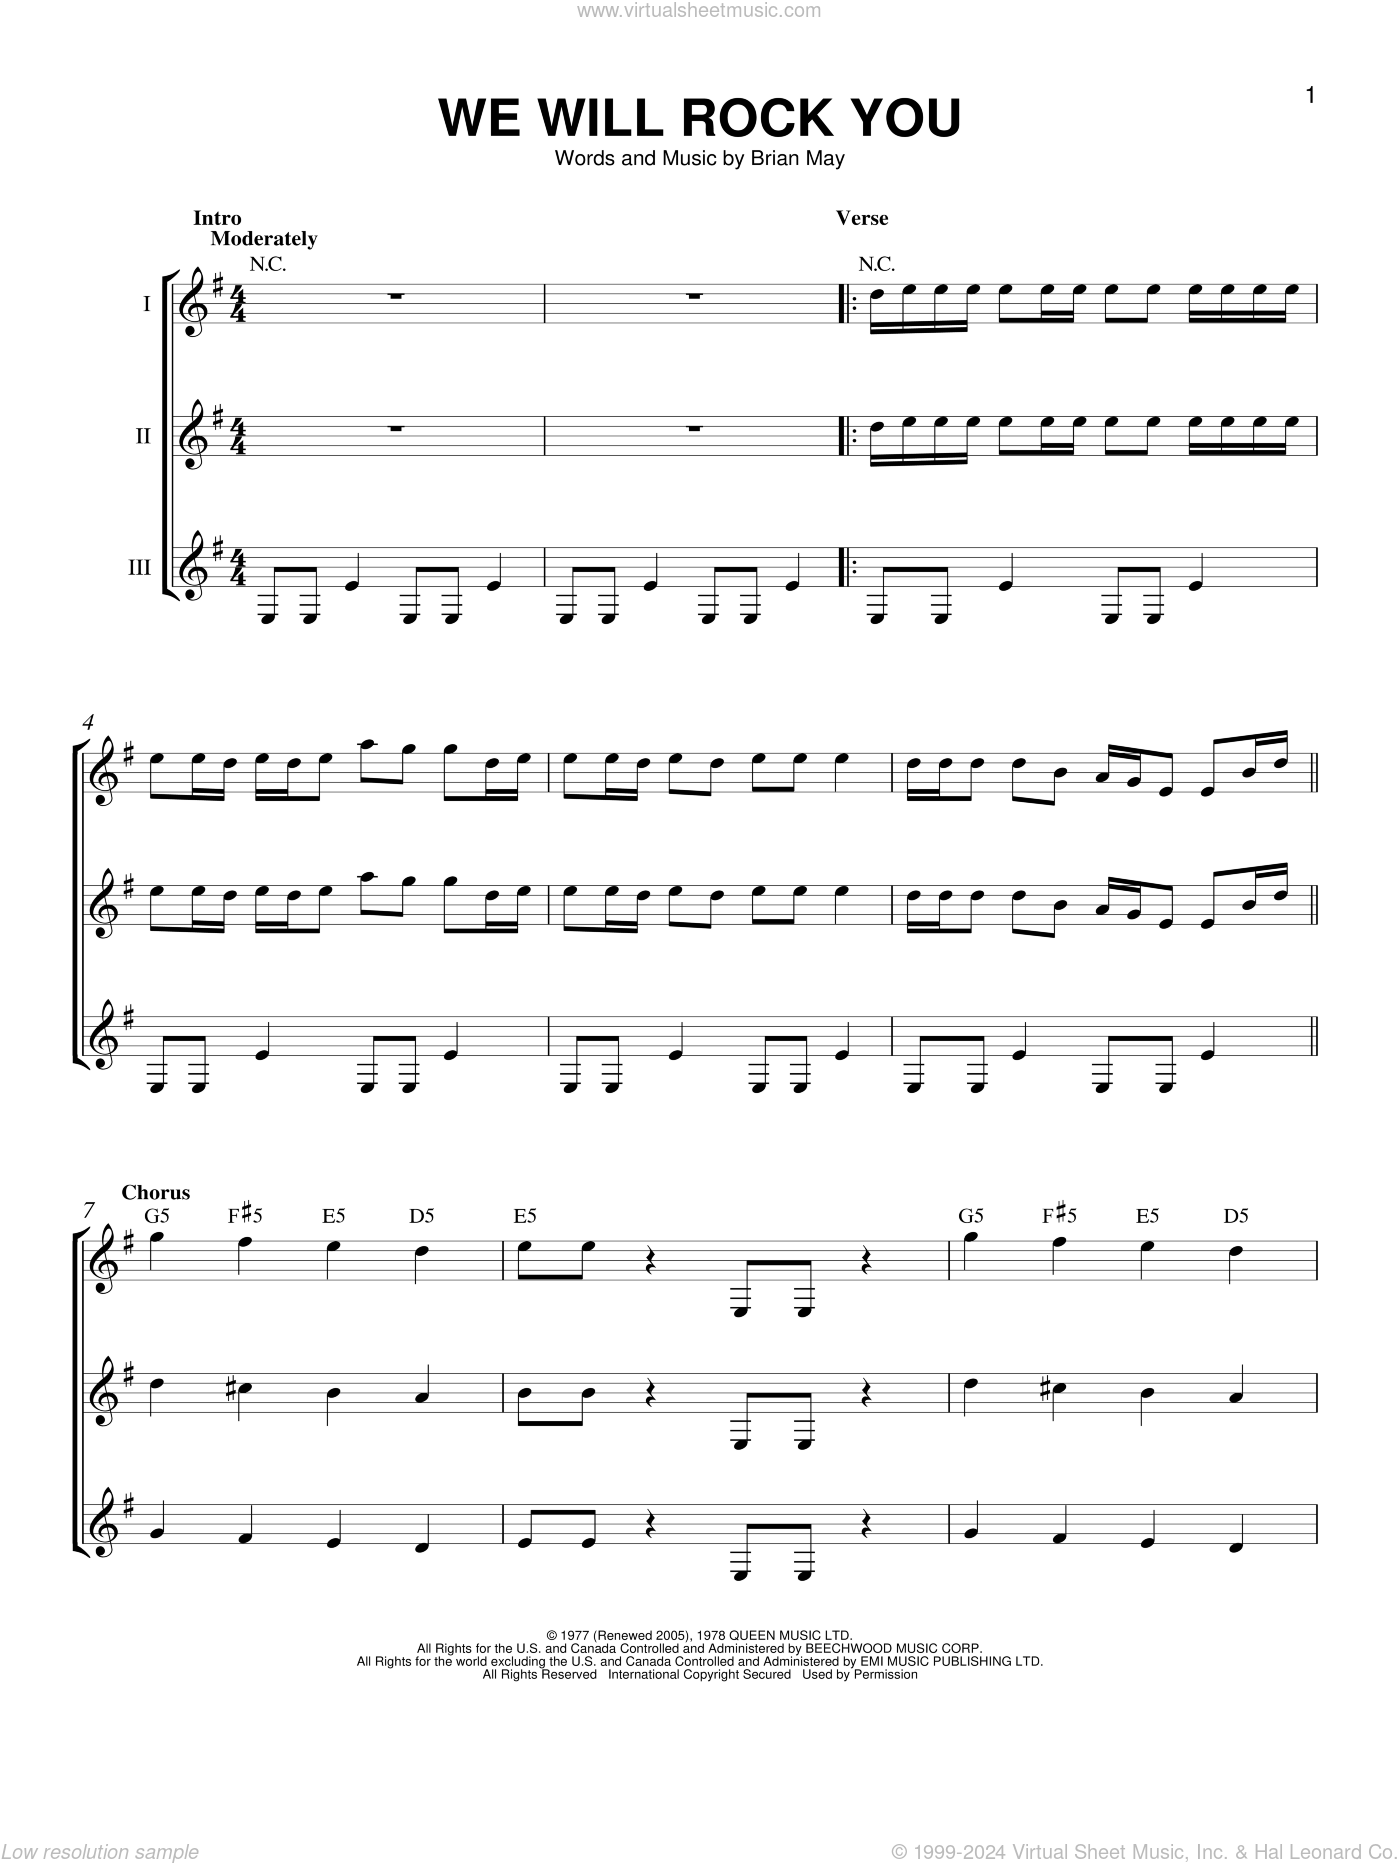 bohemian rhapsody for brass quintet sheet music